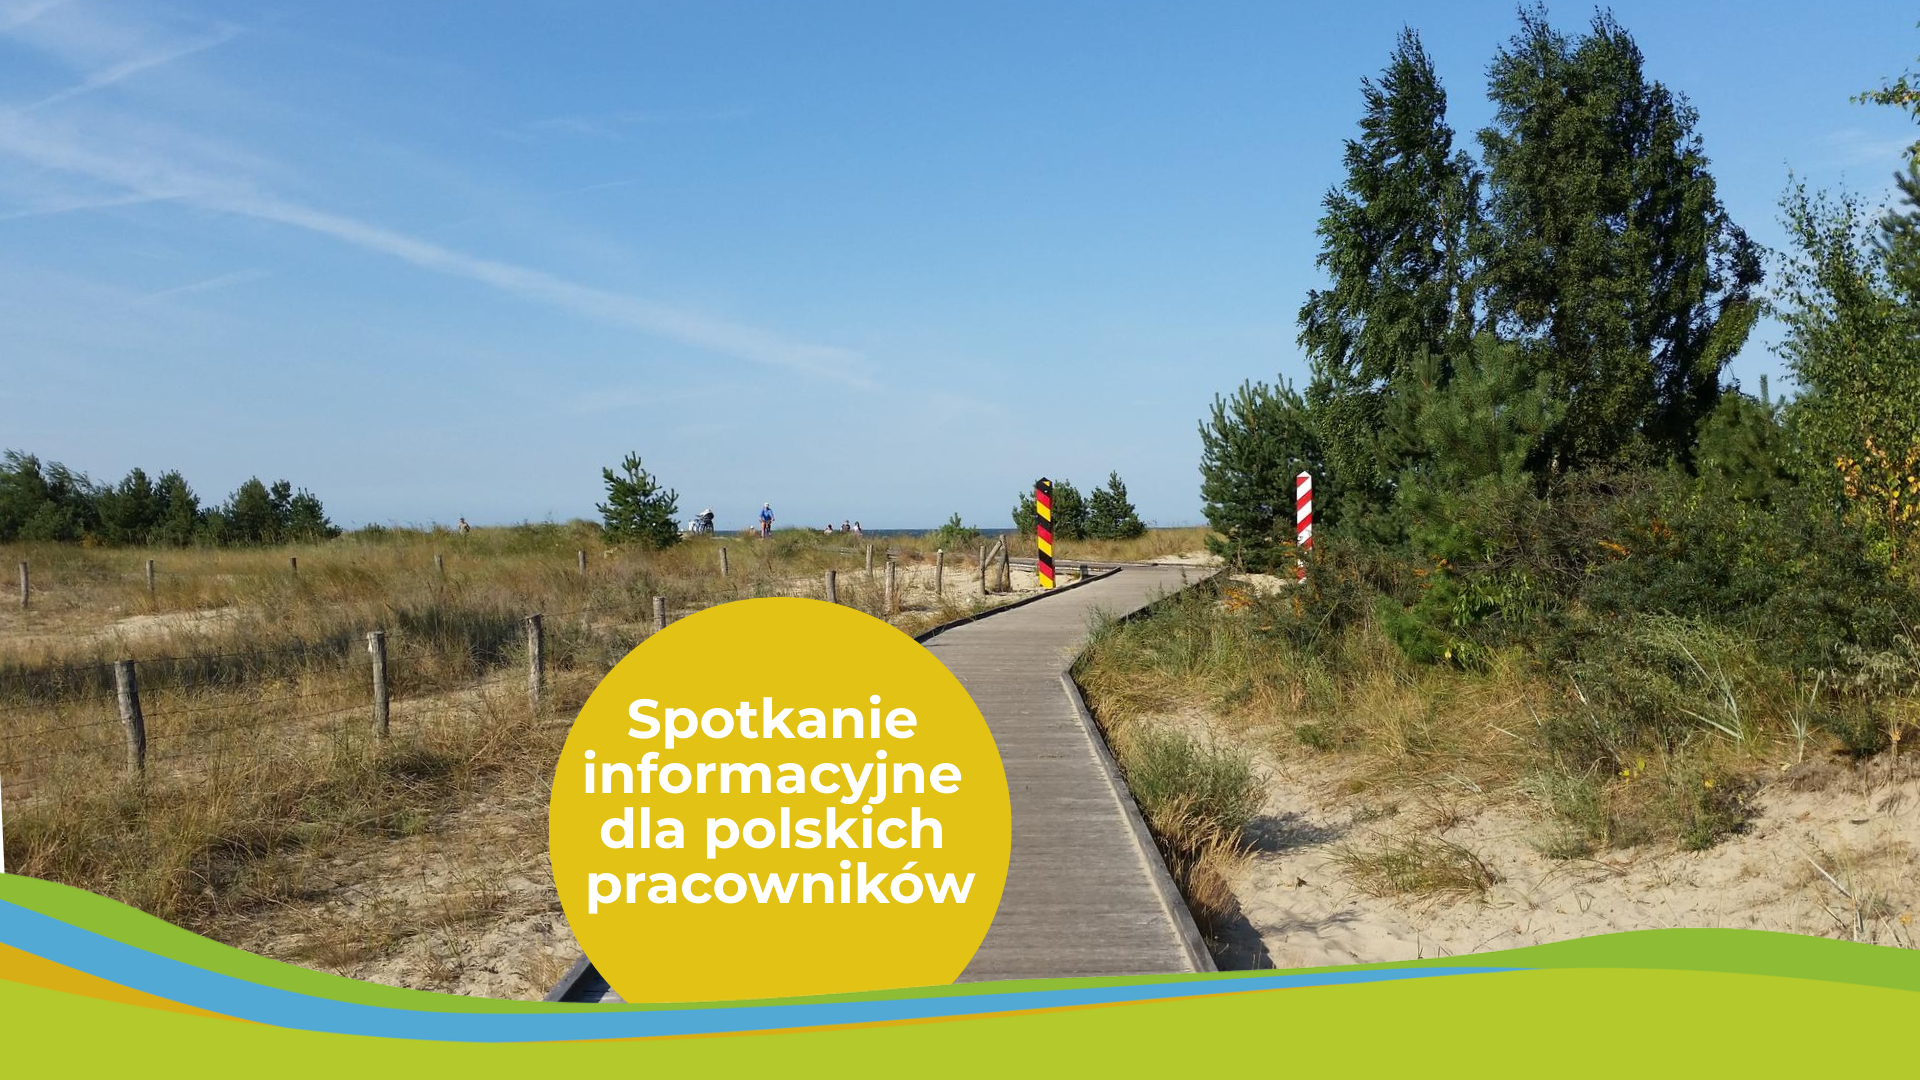 Es ist ein Weg durch die Dünen zu sehen, begrenzt durch jeweils einen deutschen und polnischen Grenzpfeiler.